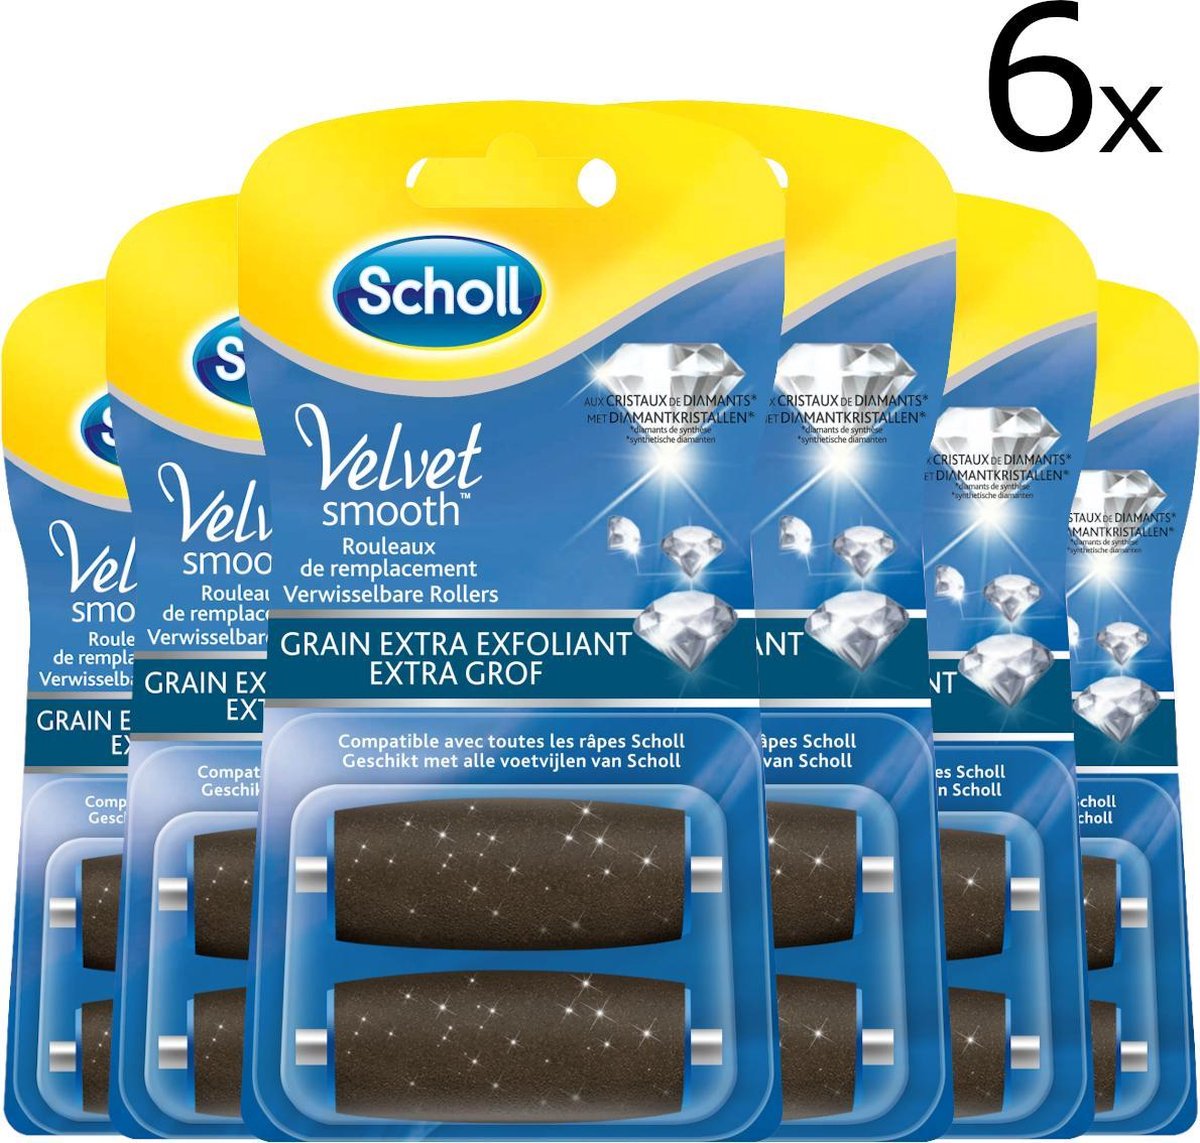 Scholl Velvet Smooth Verwisselbare Roller Diamantkristallen 2x Extra Grof [6 verpakkingen]